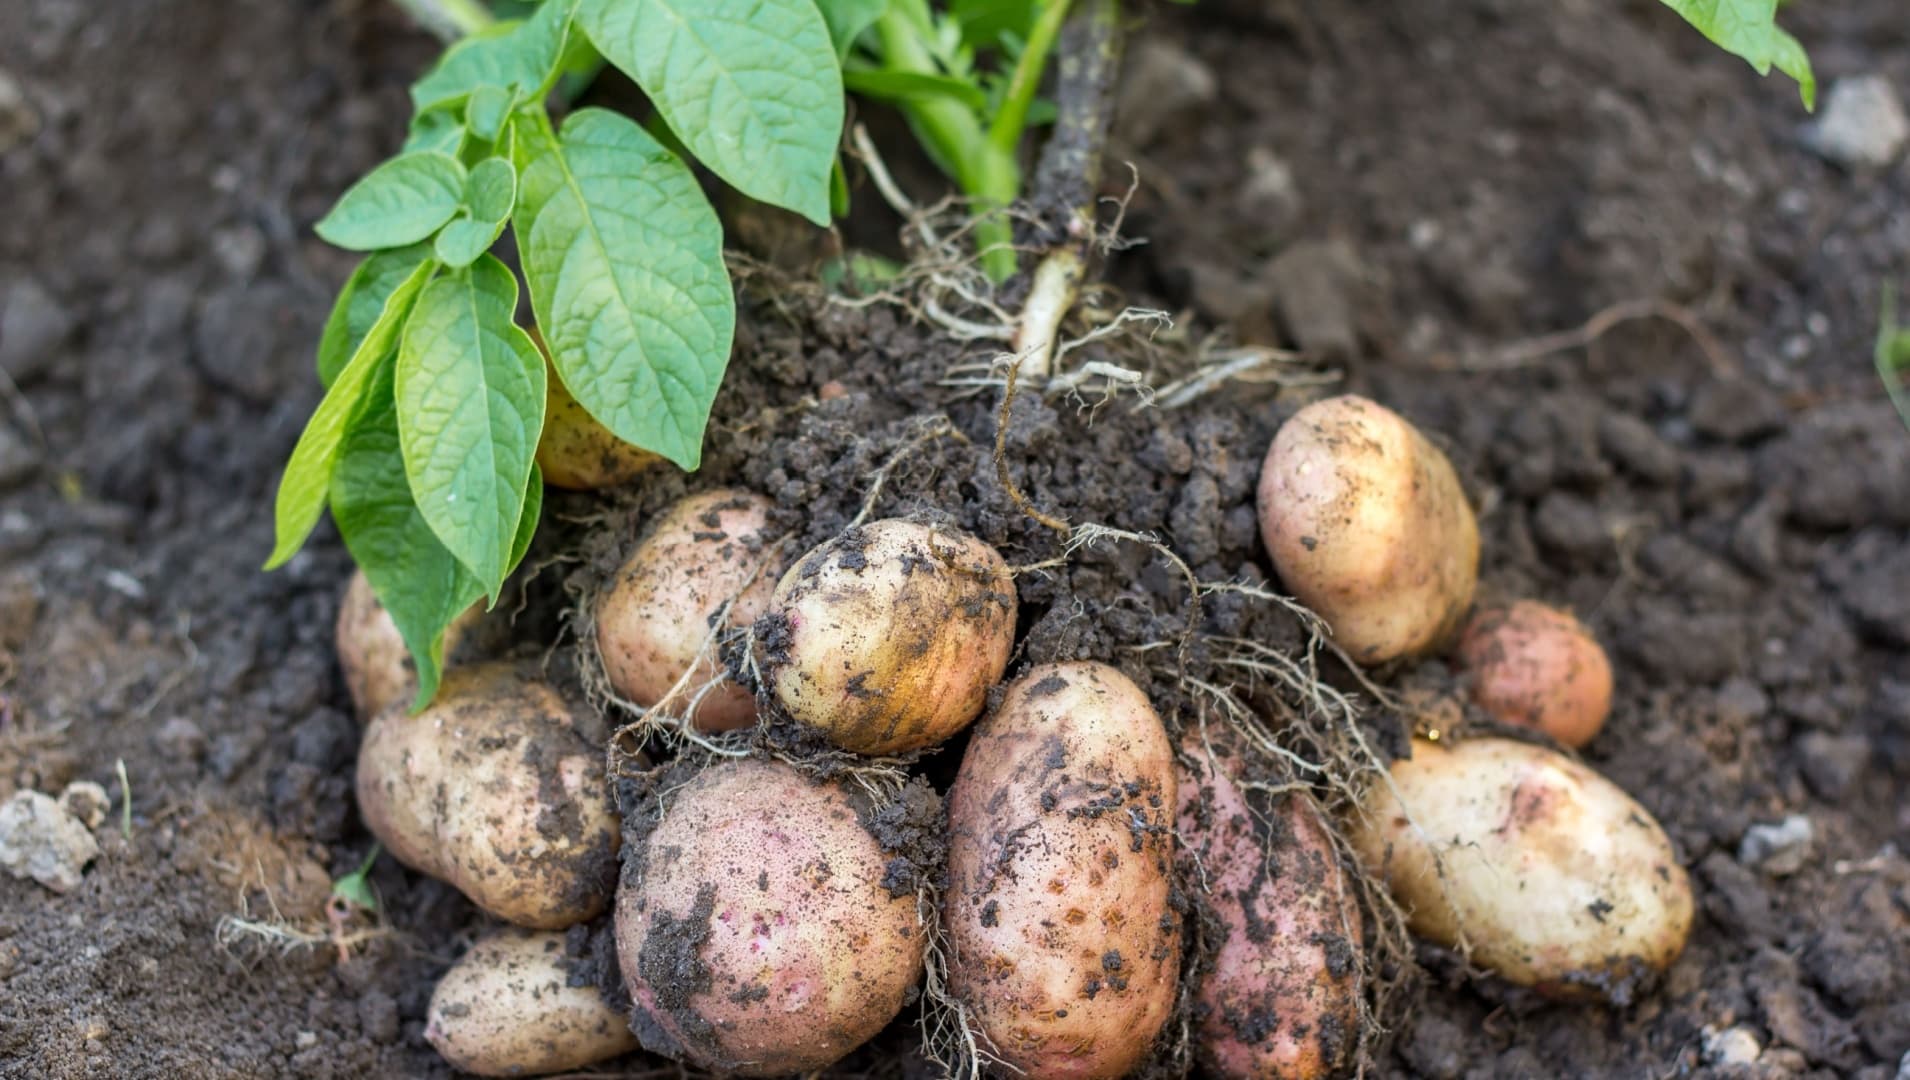 Advanced Michigan potato farm's move to fertigation means cost savings of nearly $30 per acre.